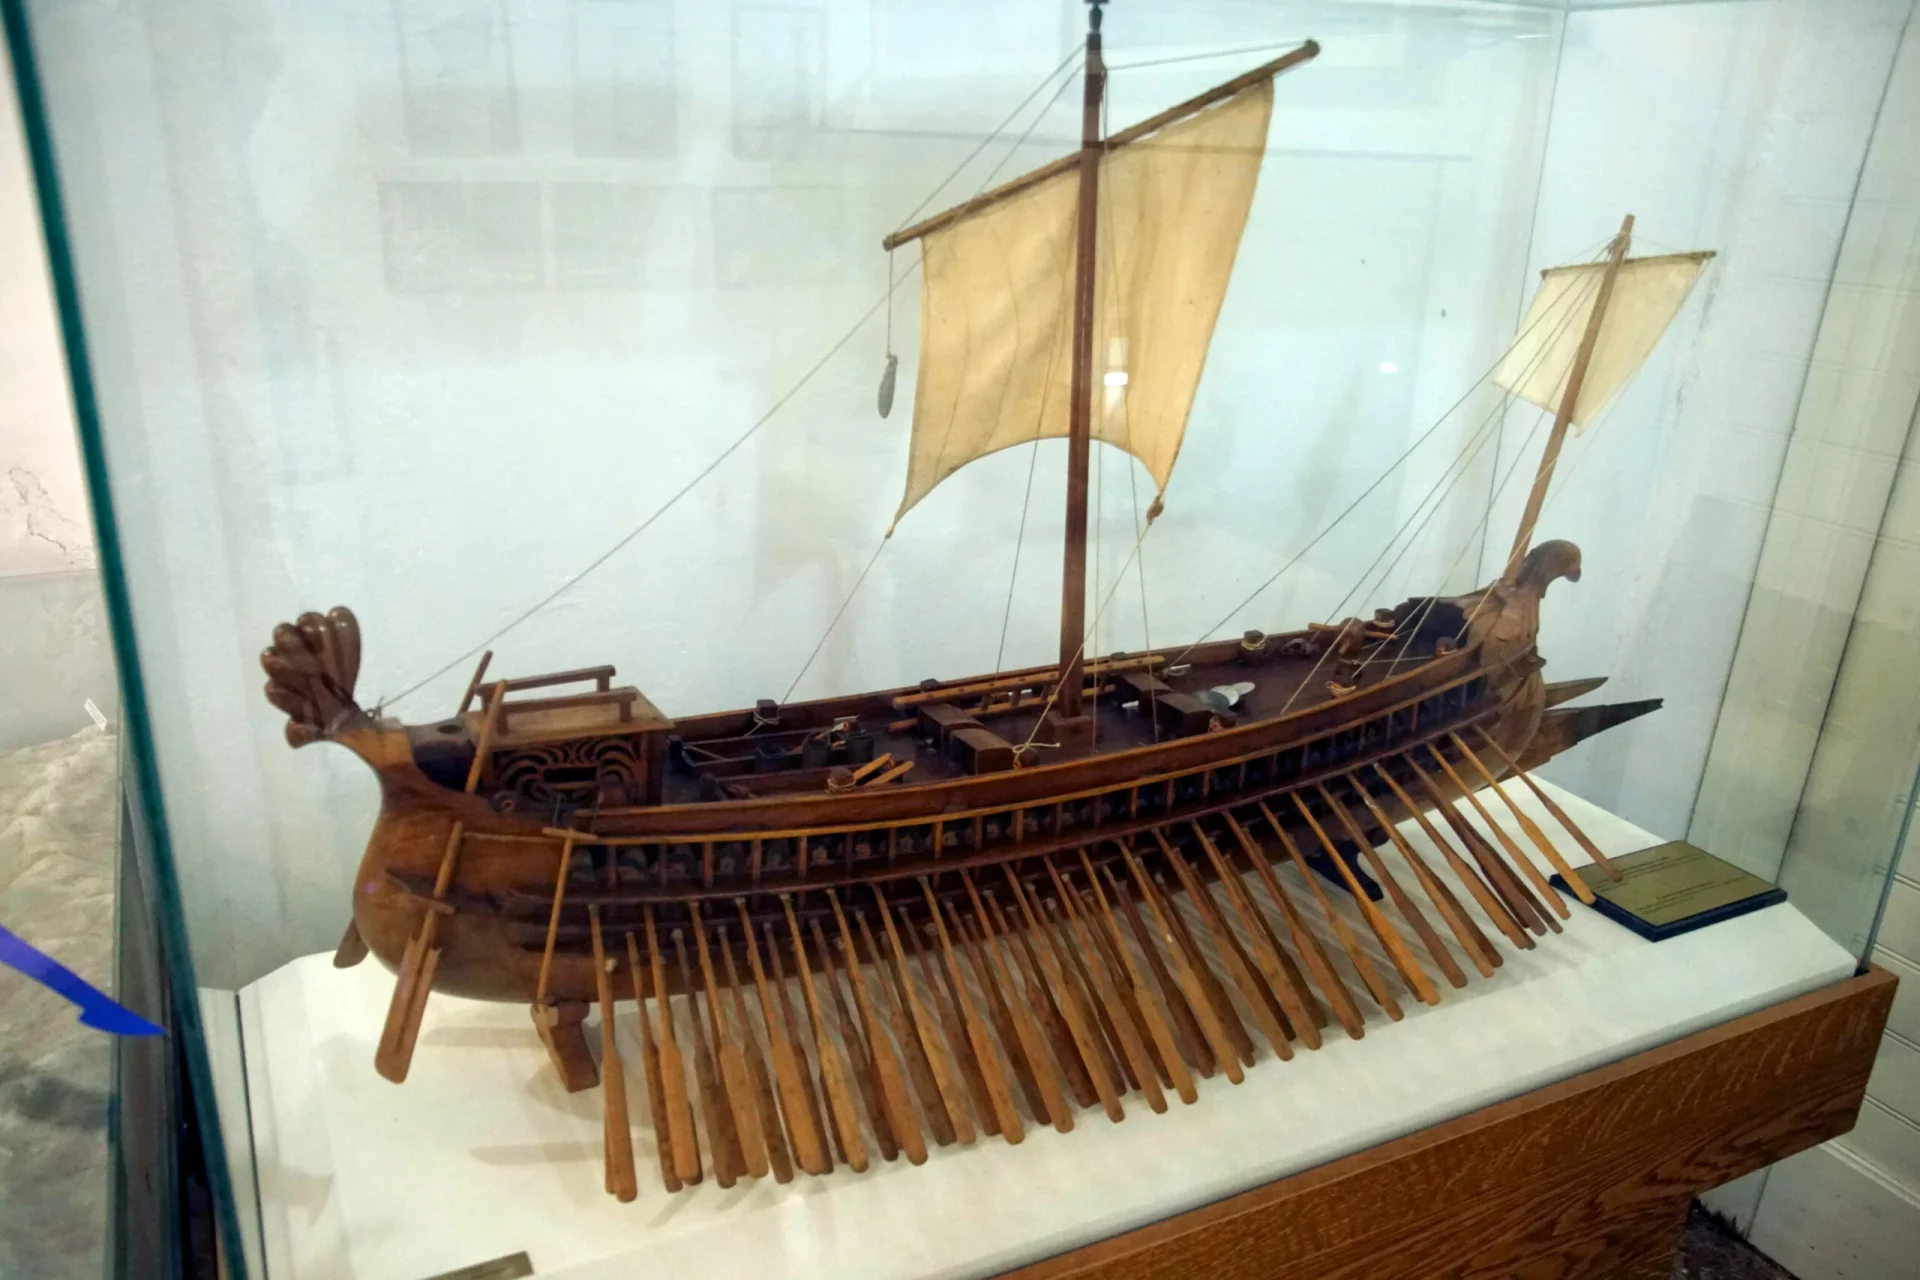 A Roman boat, the trireme